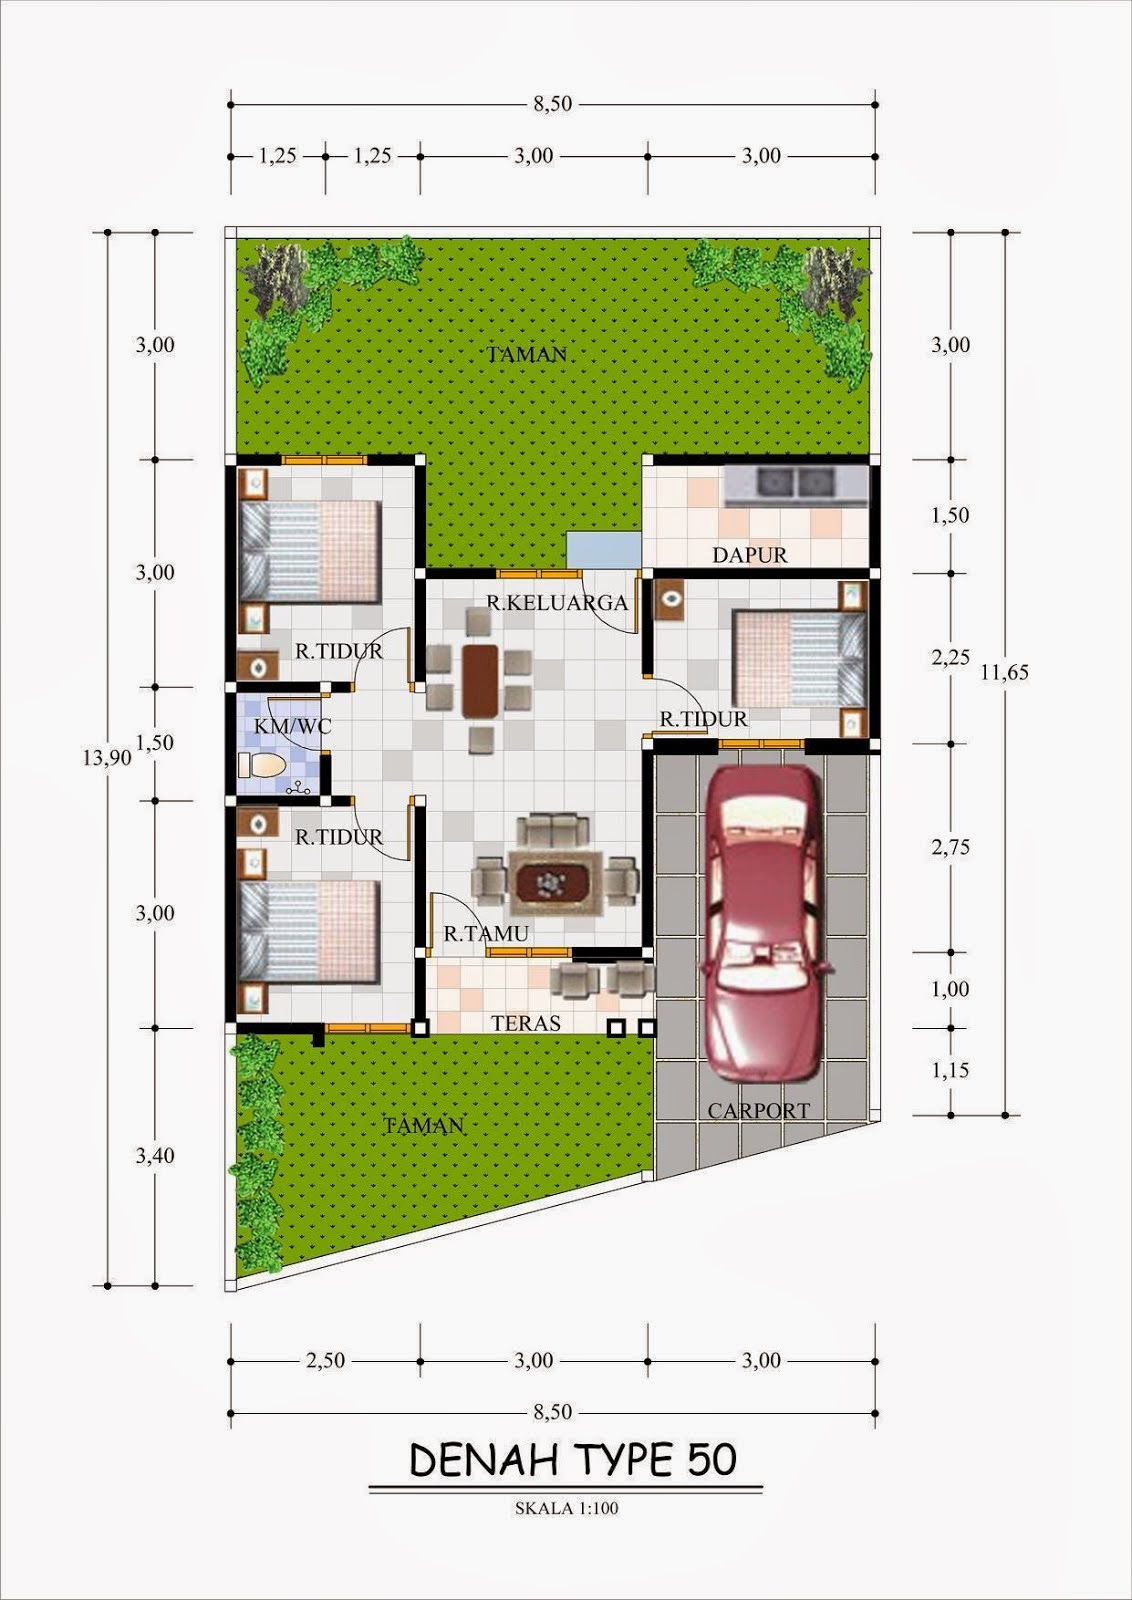 69 Desain Interior Rumah Minimalis Type 40 Desain Rumah